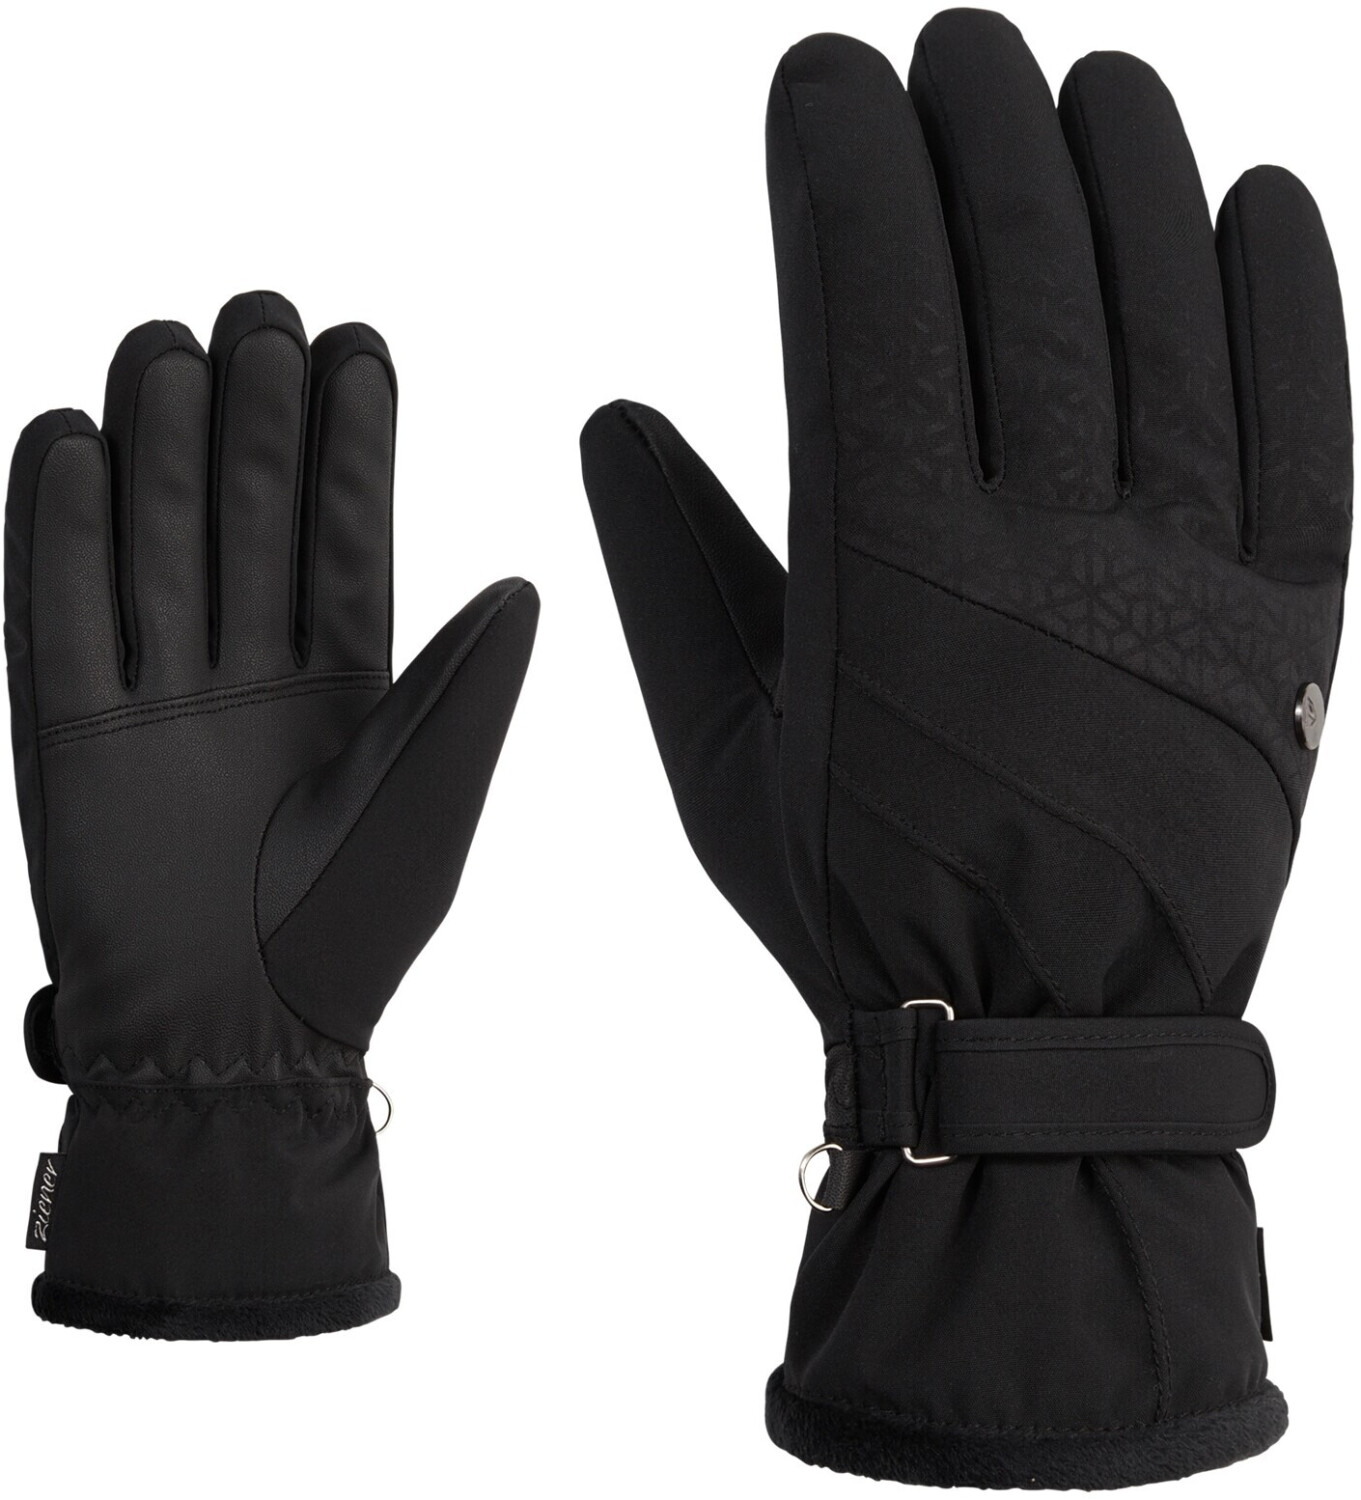 Ziener Kasa Lady Glove black ab 44,45 € | Preisvergleich bei